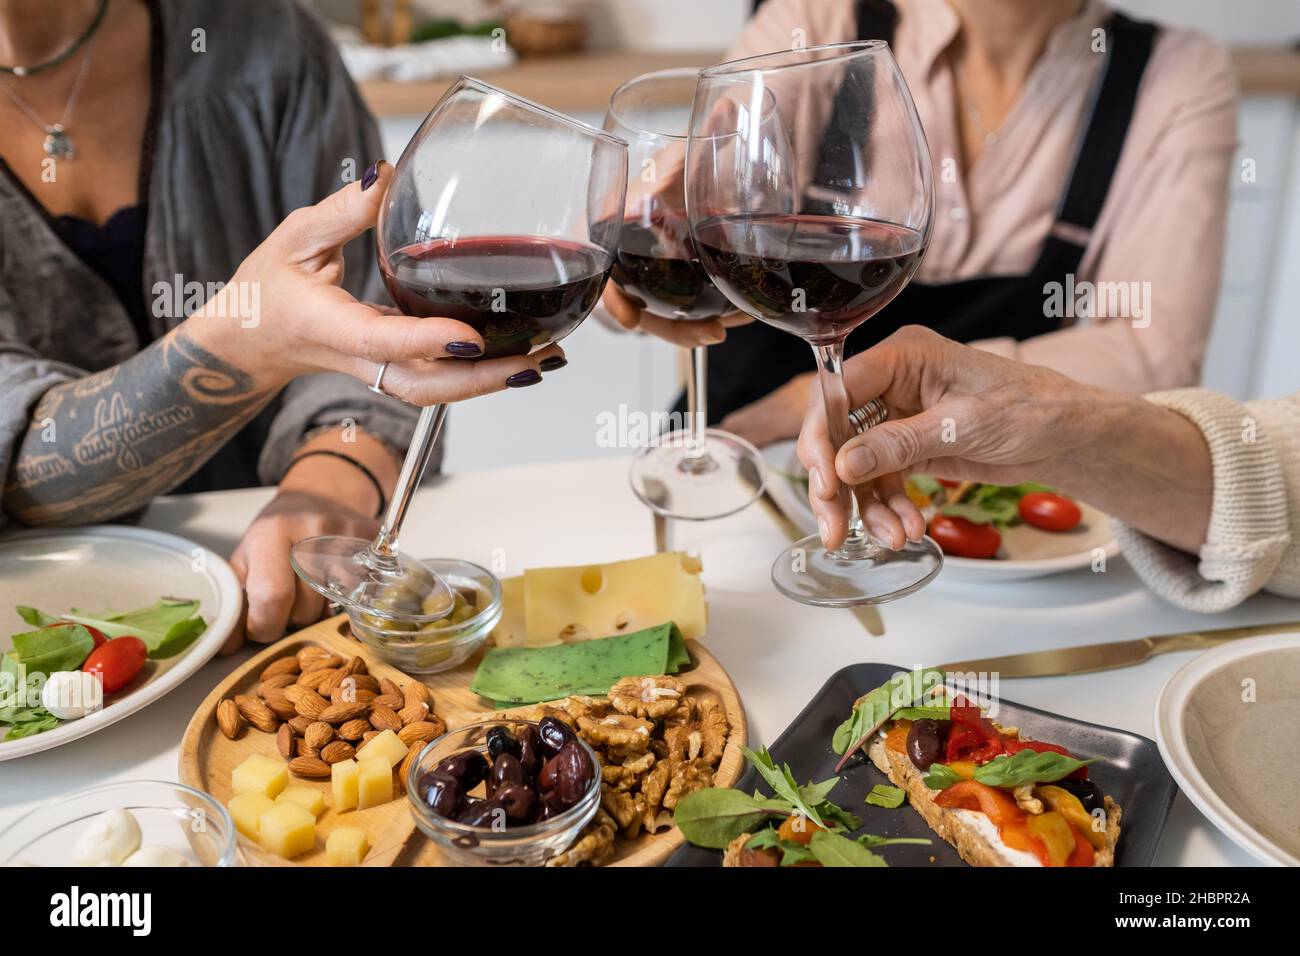 Primo piano di donne che tostano con bicchieri di vino rosso mentre si siede al tavolo da pranzo con antipasti Foto Stock